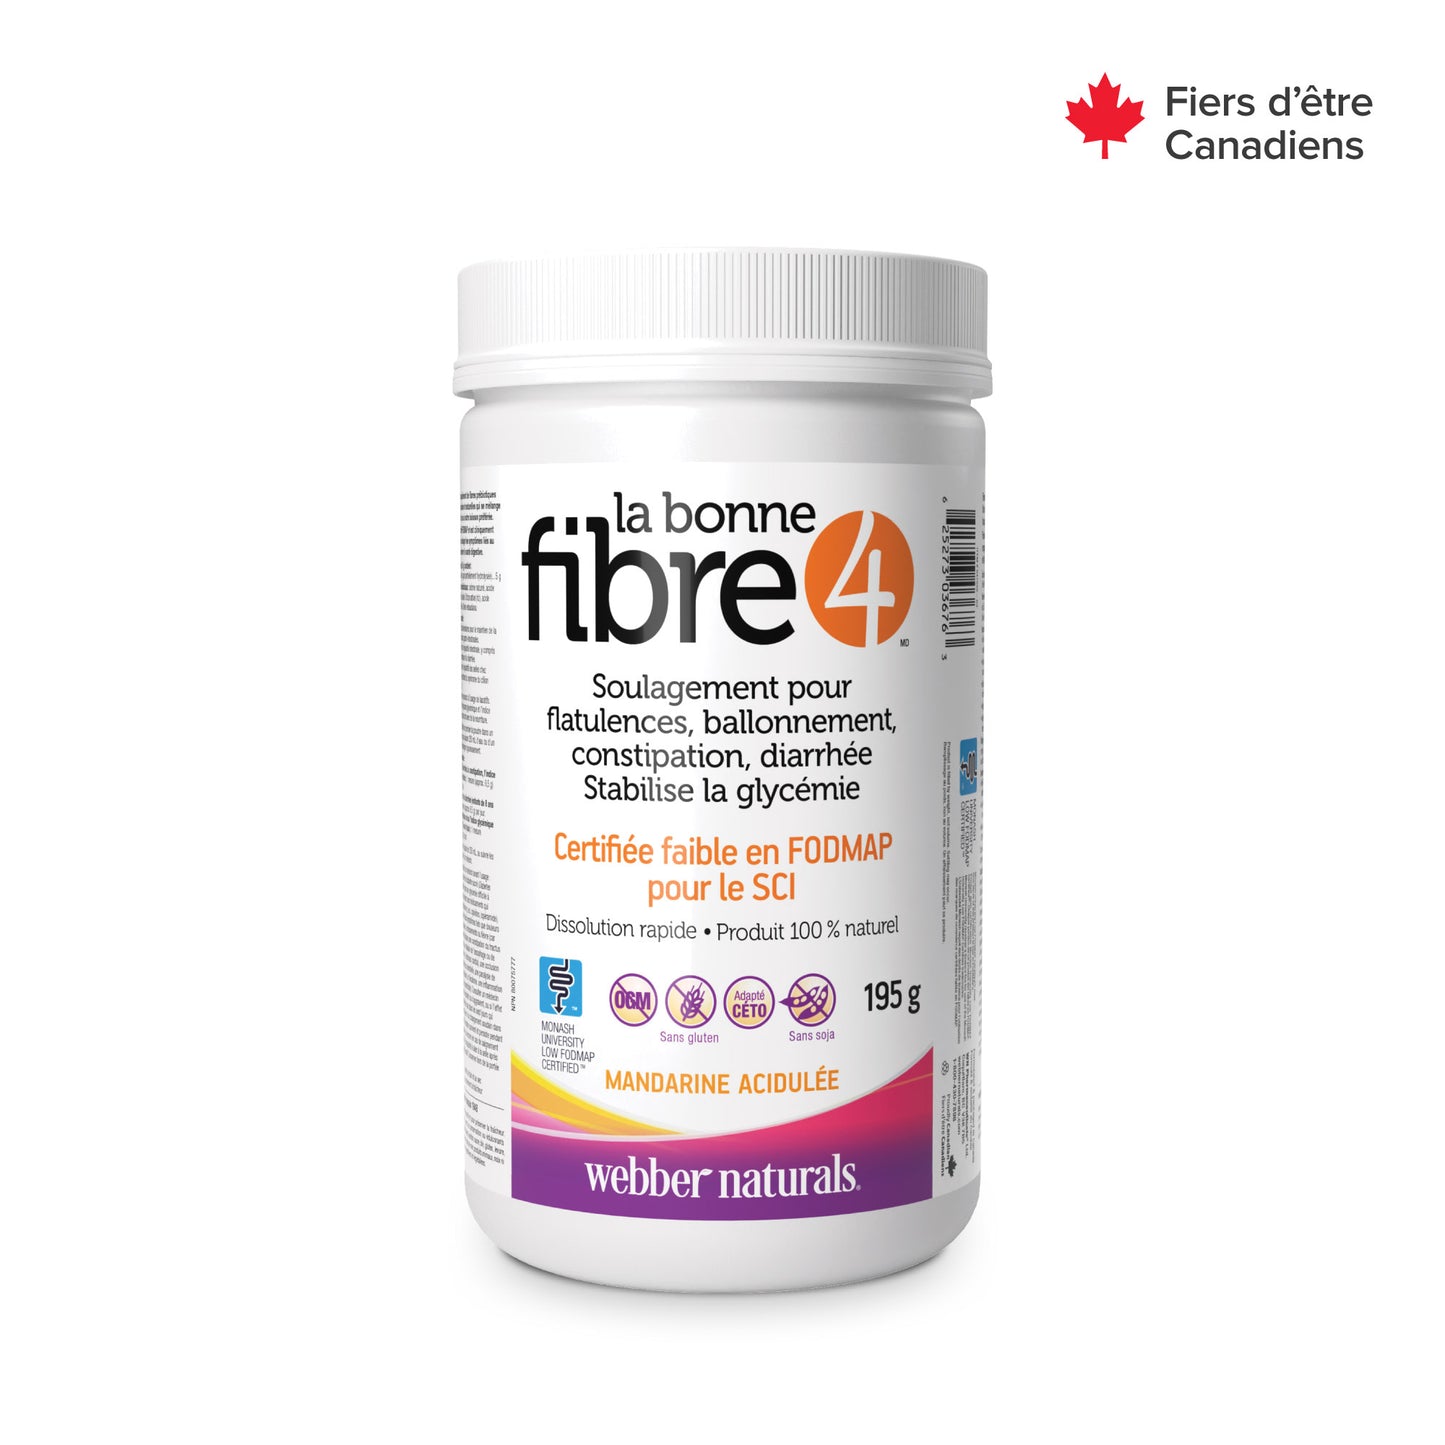 La bonne fibre4(MD) mandarine acidulée for Webber Naturals|v|hi-res|WN3676